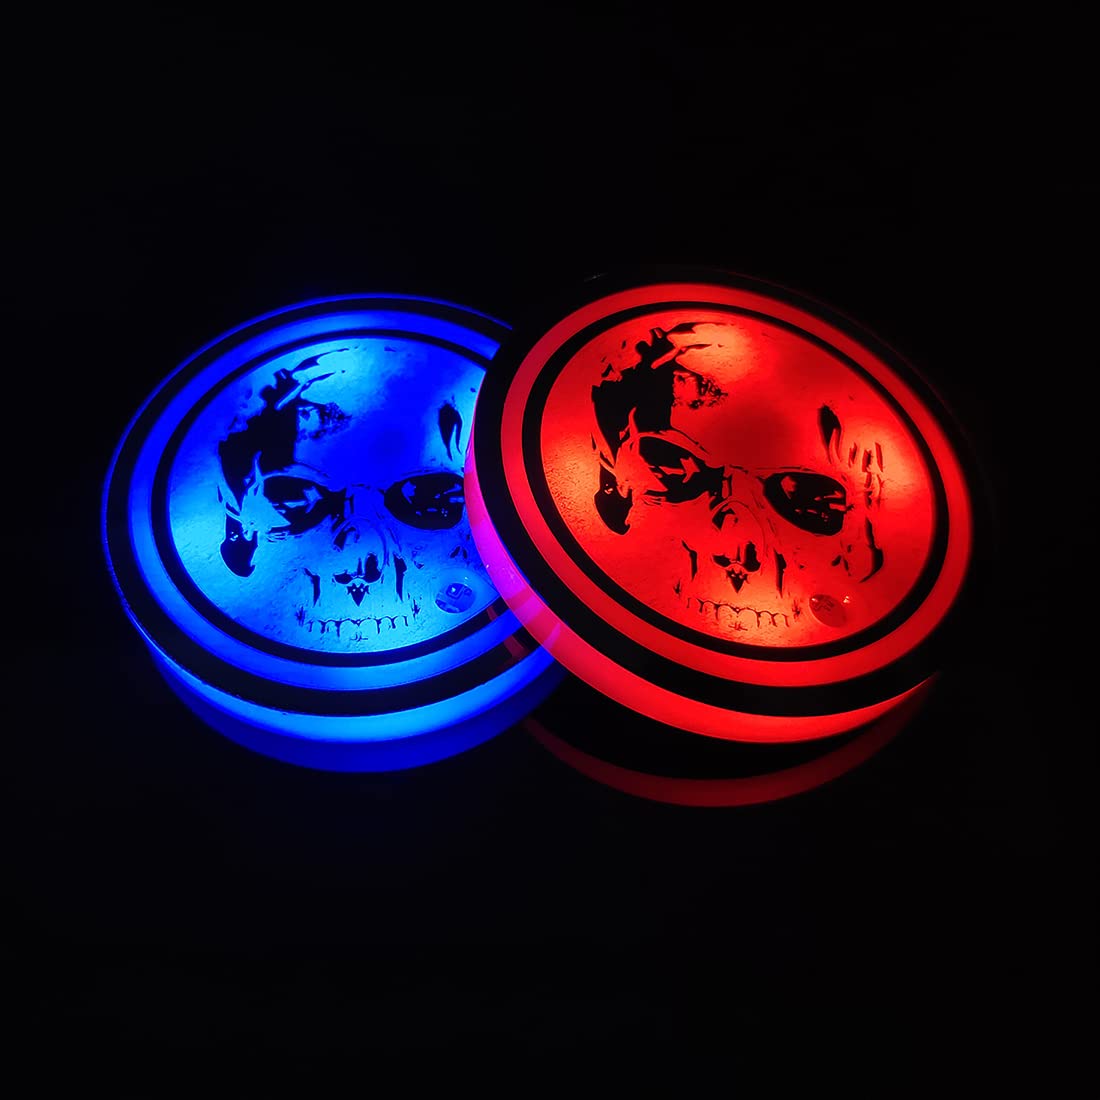 2 Stück LED Auto Getränkehalter Lichter,USB Lade Auto Untersetzer mit 7 Farben Leuchtlicht Cup Pad für Auto Fahrzeug LKW Dekoration Atmosphäre Licht von Zosppei